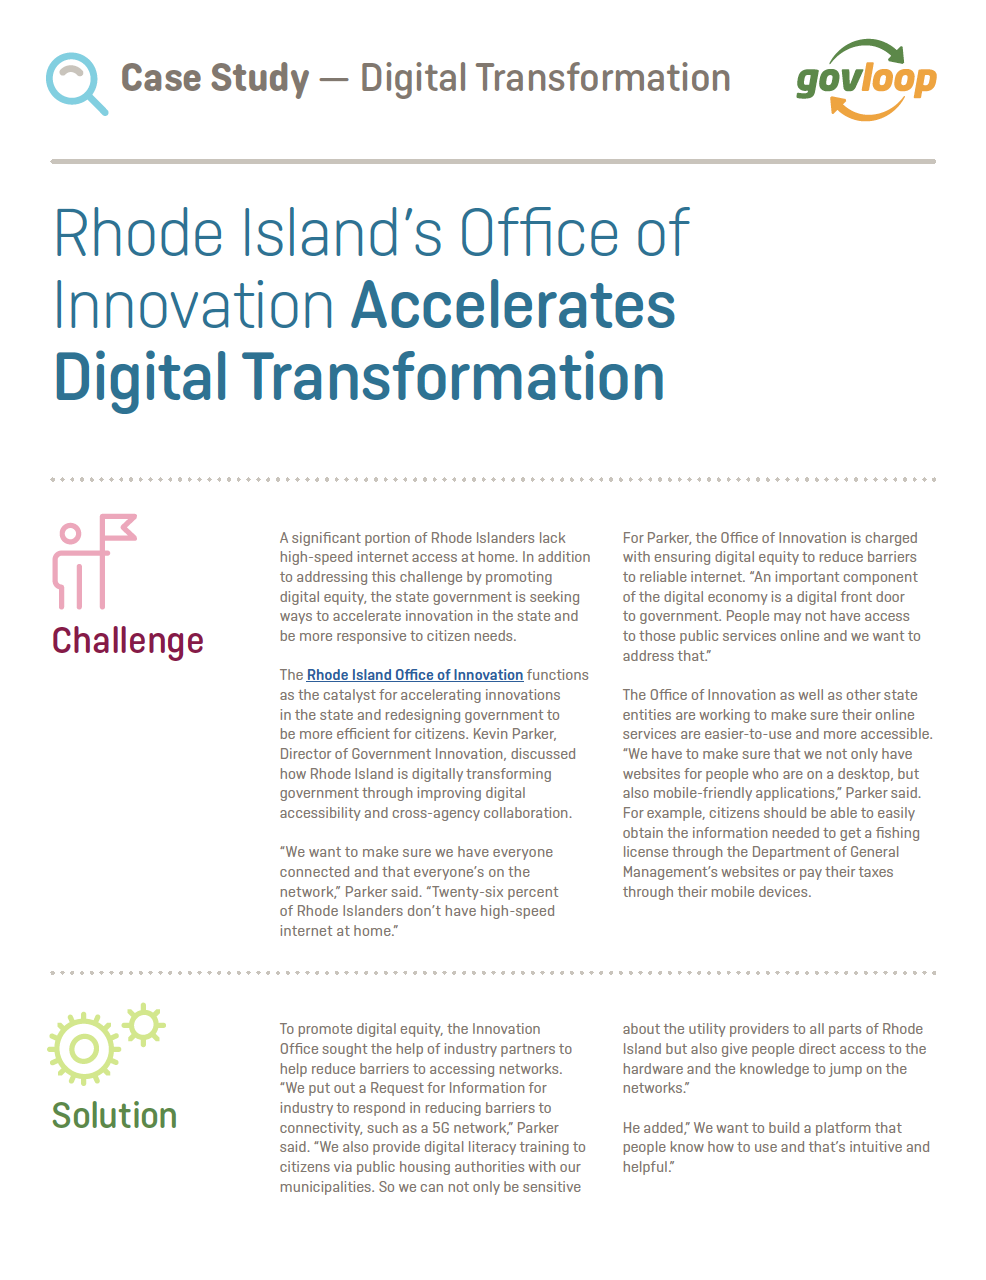 rhode island digital transformation